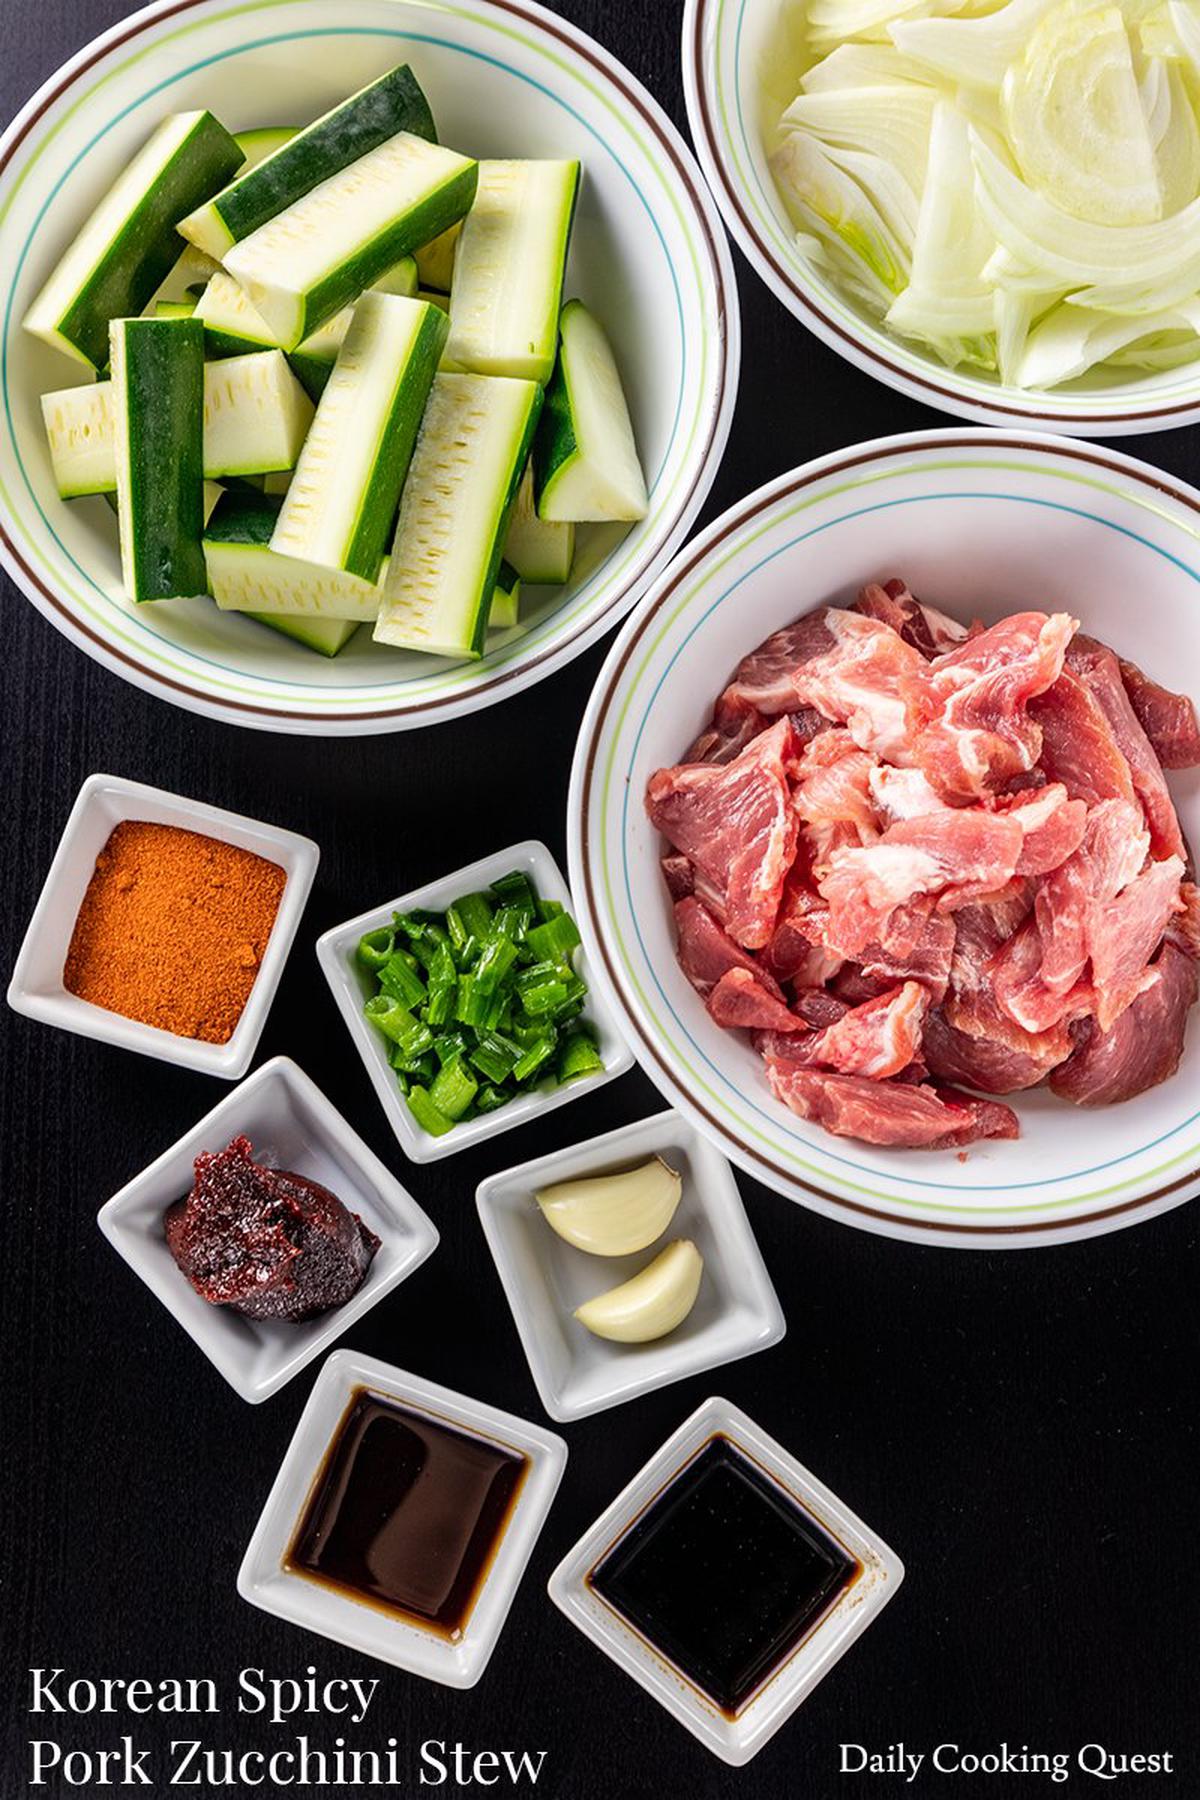 Korean Spicy Pork Zucchini Stew.